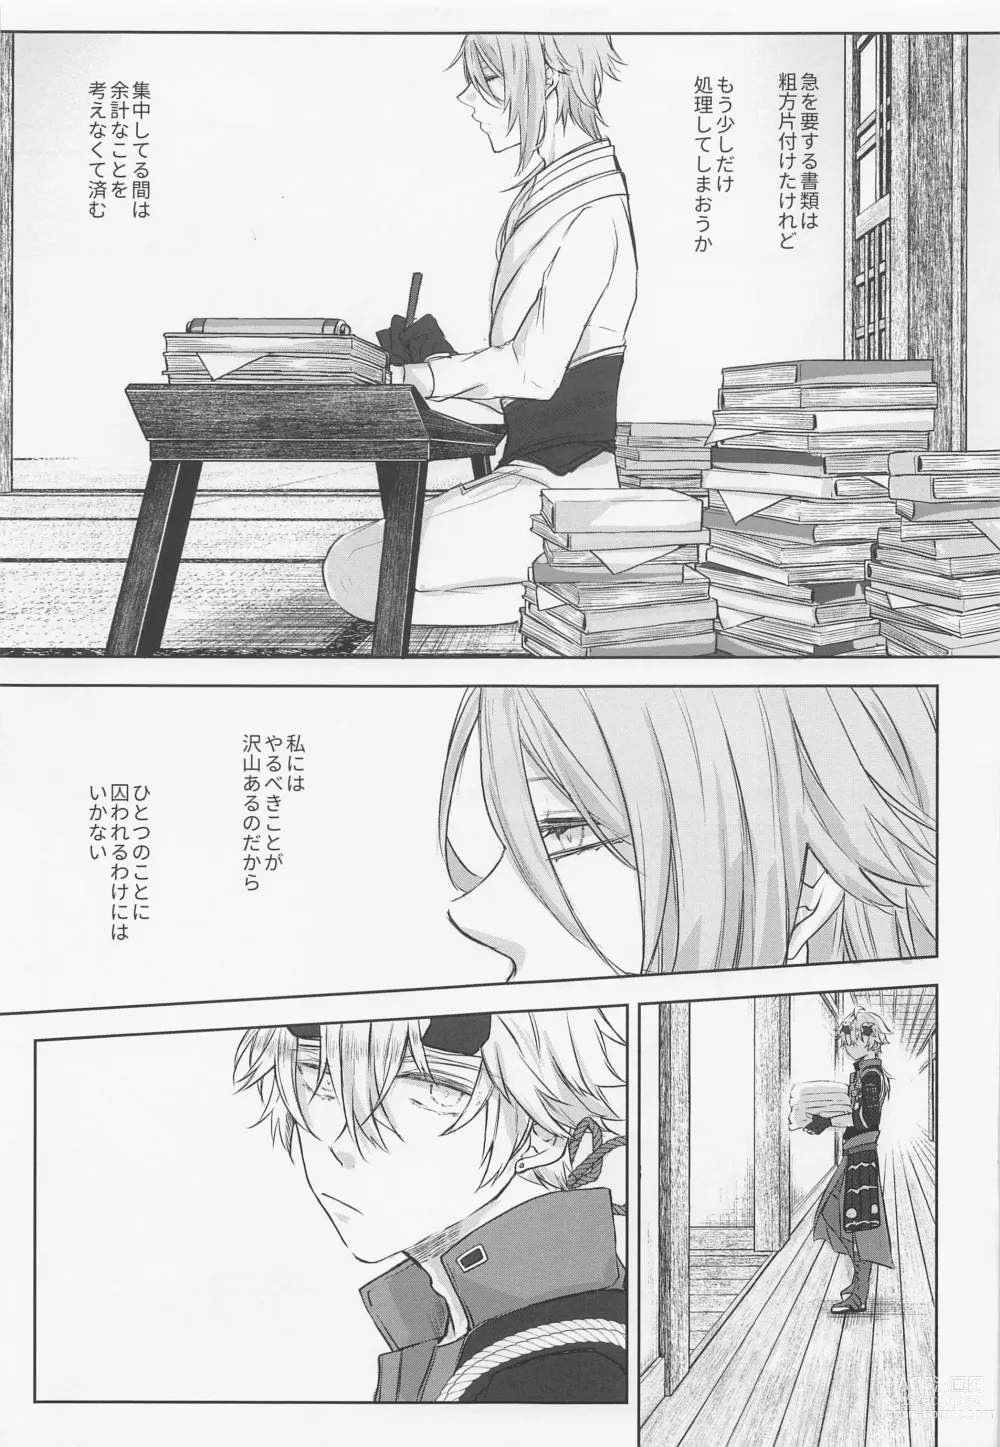 Page 34 of doujinshi Saredo, Kimi ni Sosogu Kingyo no Hanabira